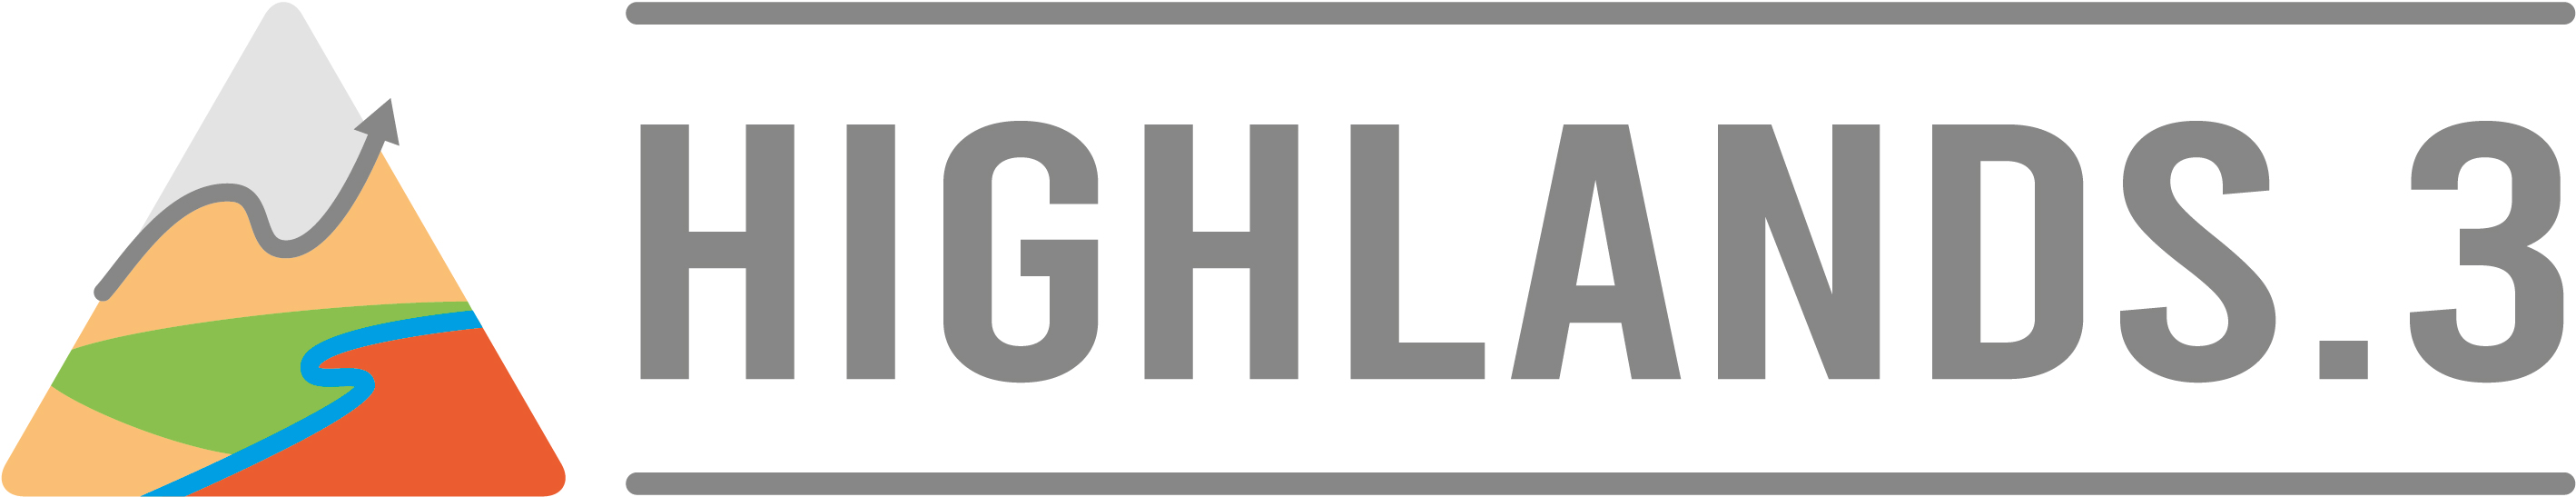 highlands3 logo RGB landscape